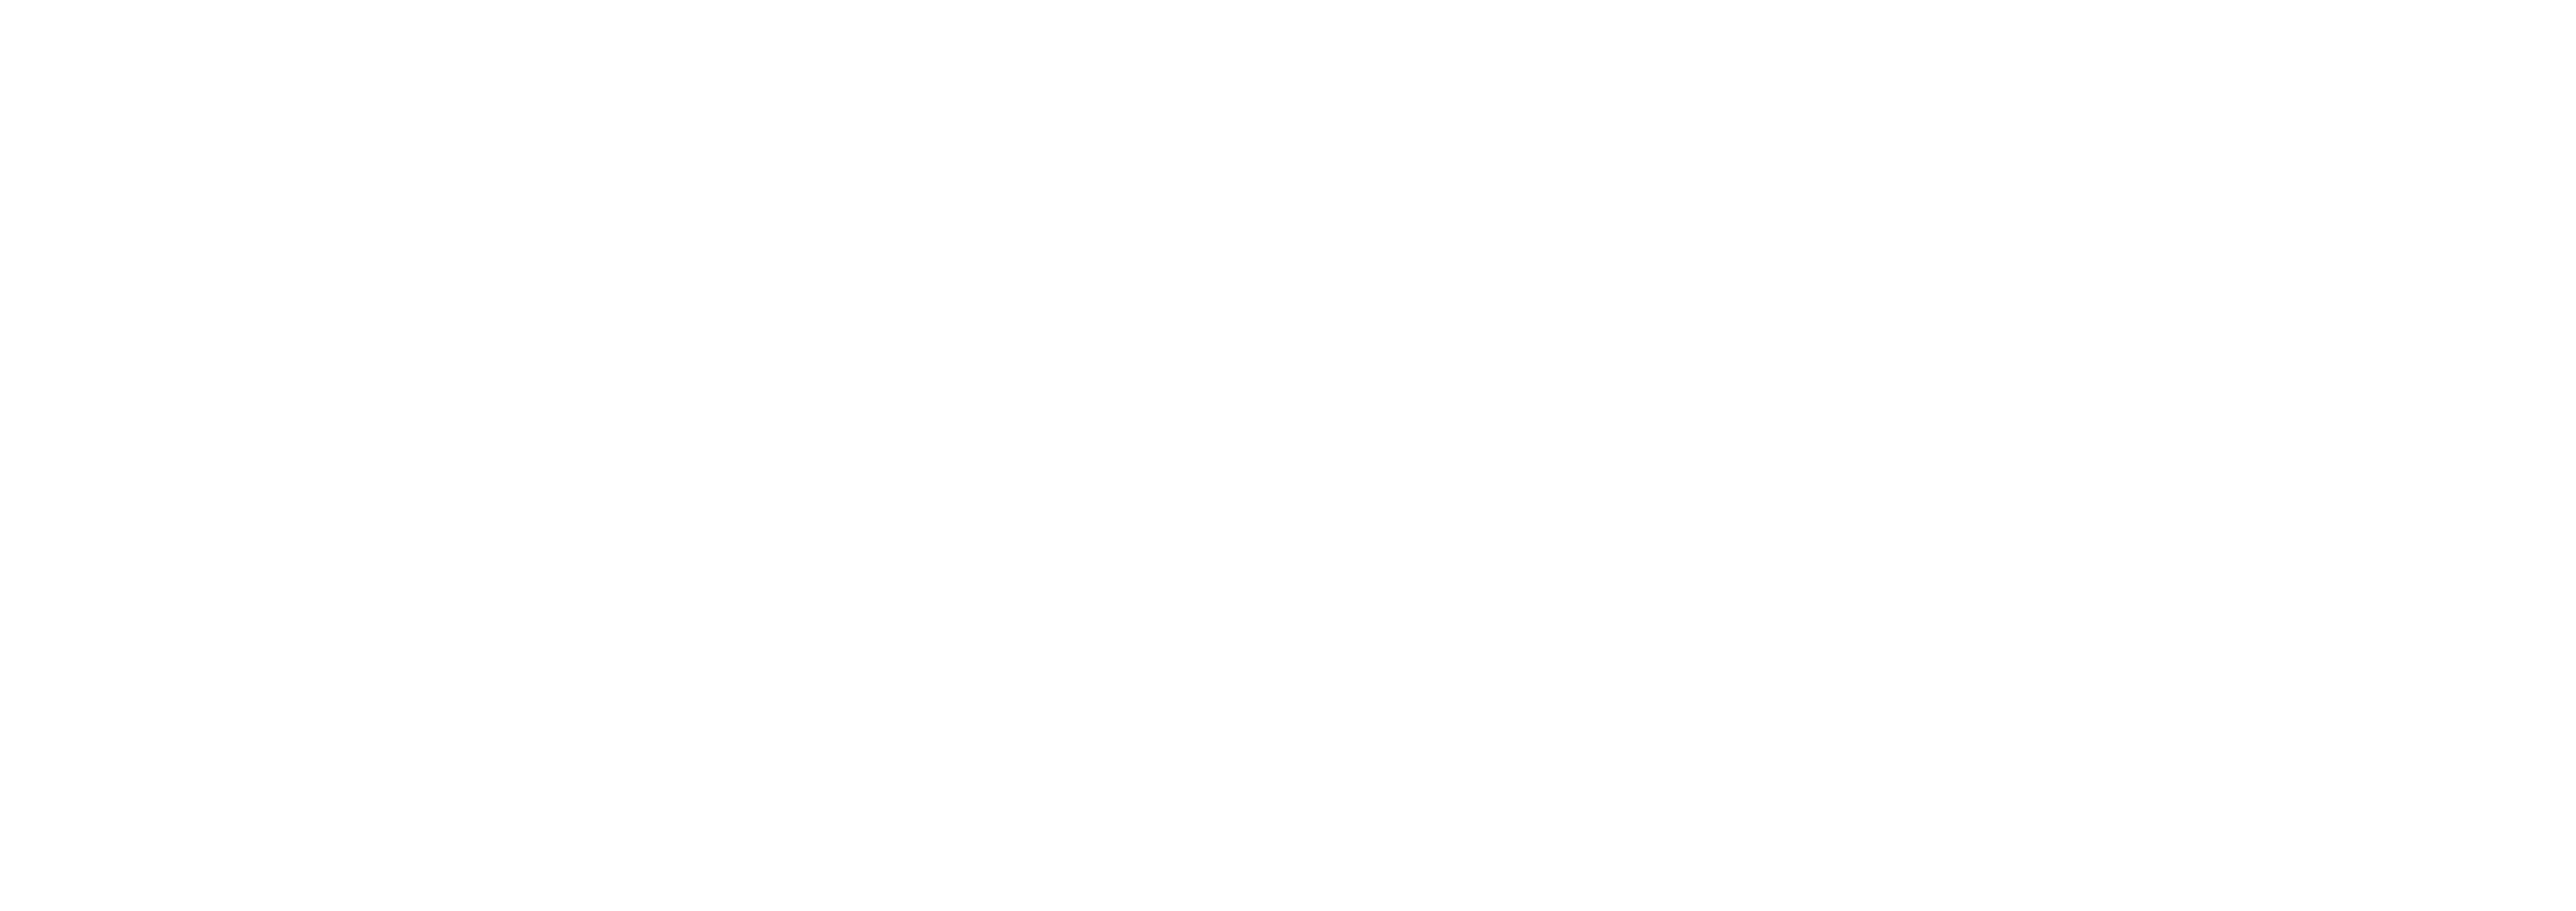 Polyphoria